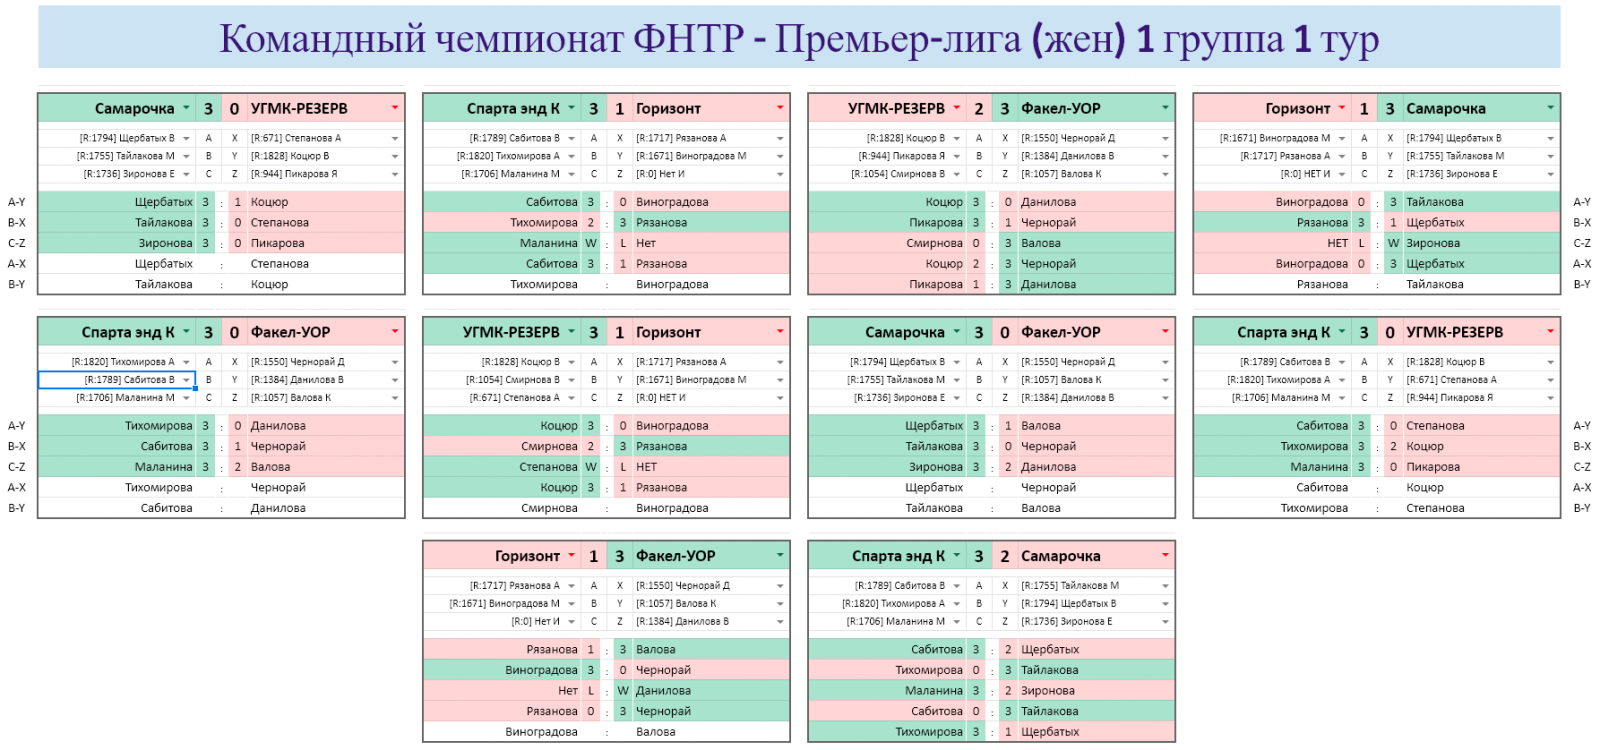 результаты турнира Командный чемпионат ФНТР (жен) Премьер-лига (группа 1, тур 1)